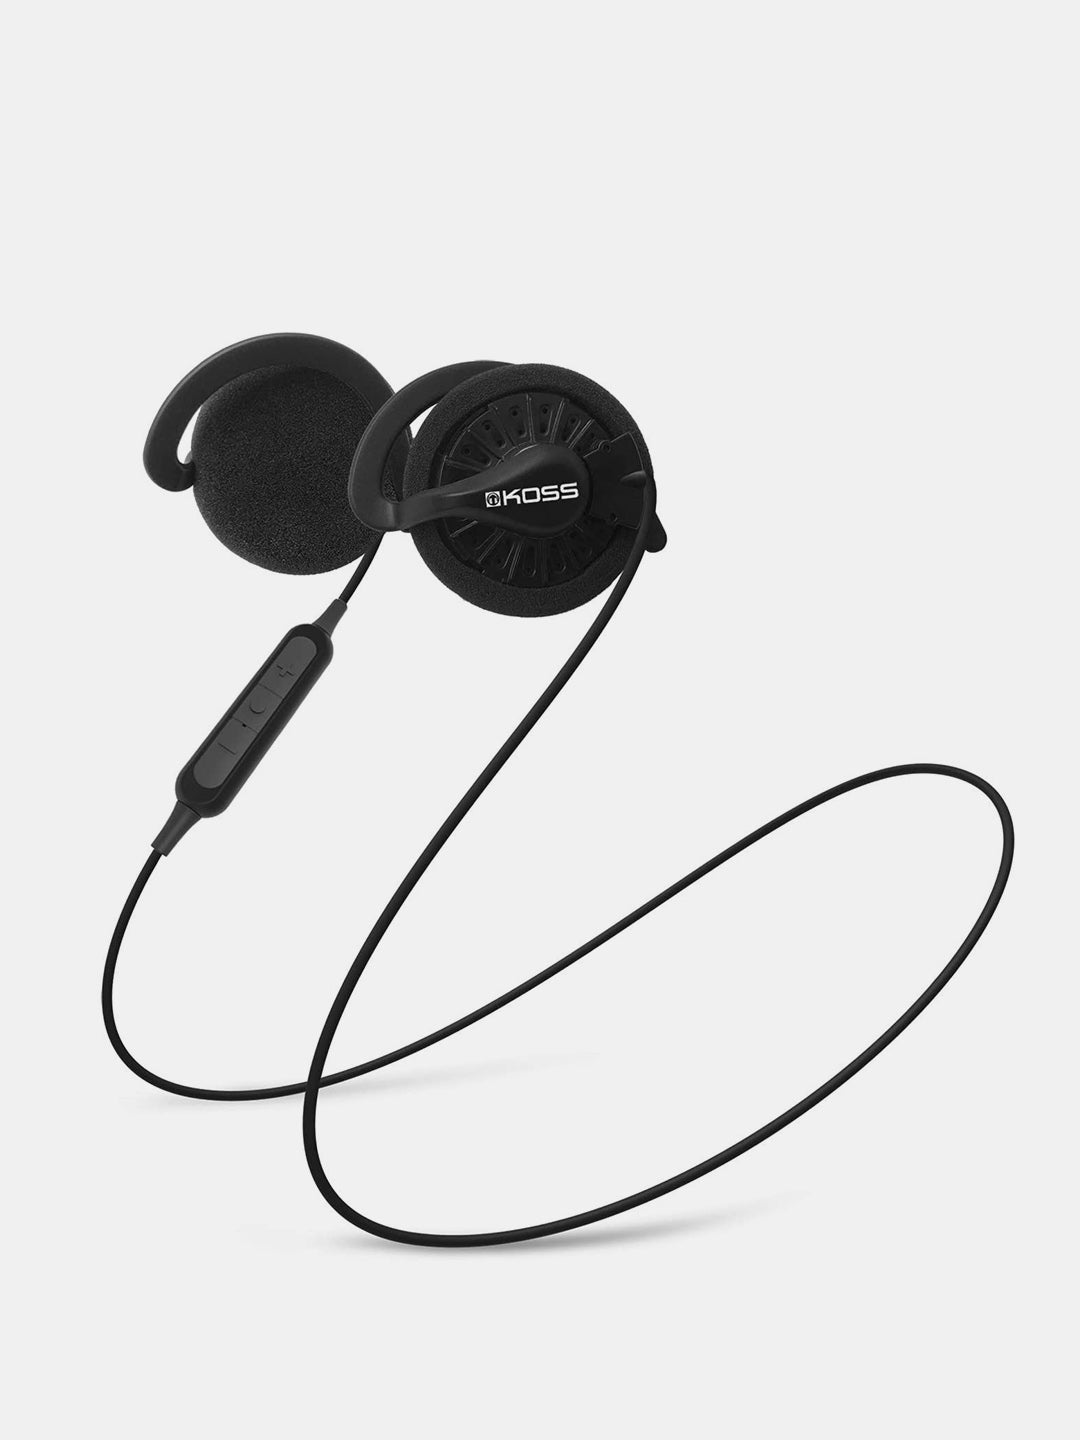 Koss KSC35 - Wireless On-Ear Headphones - Black